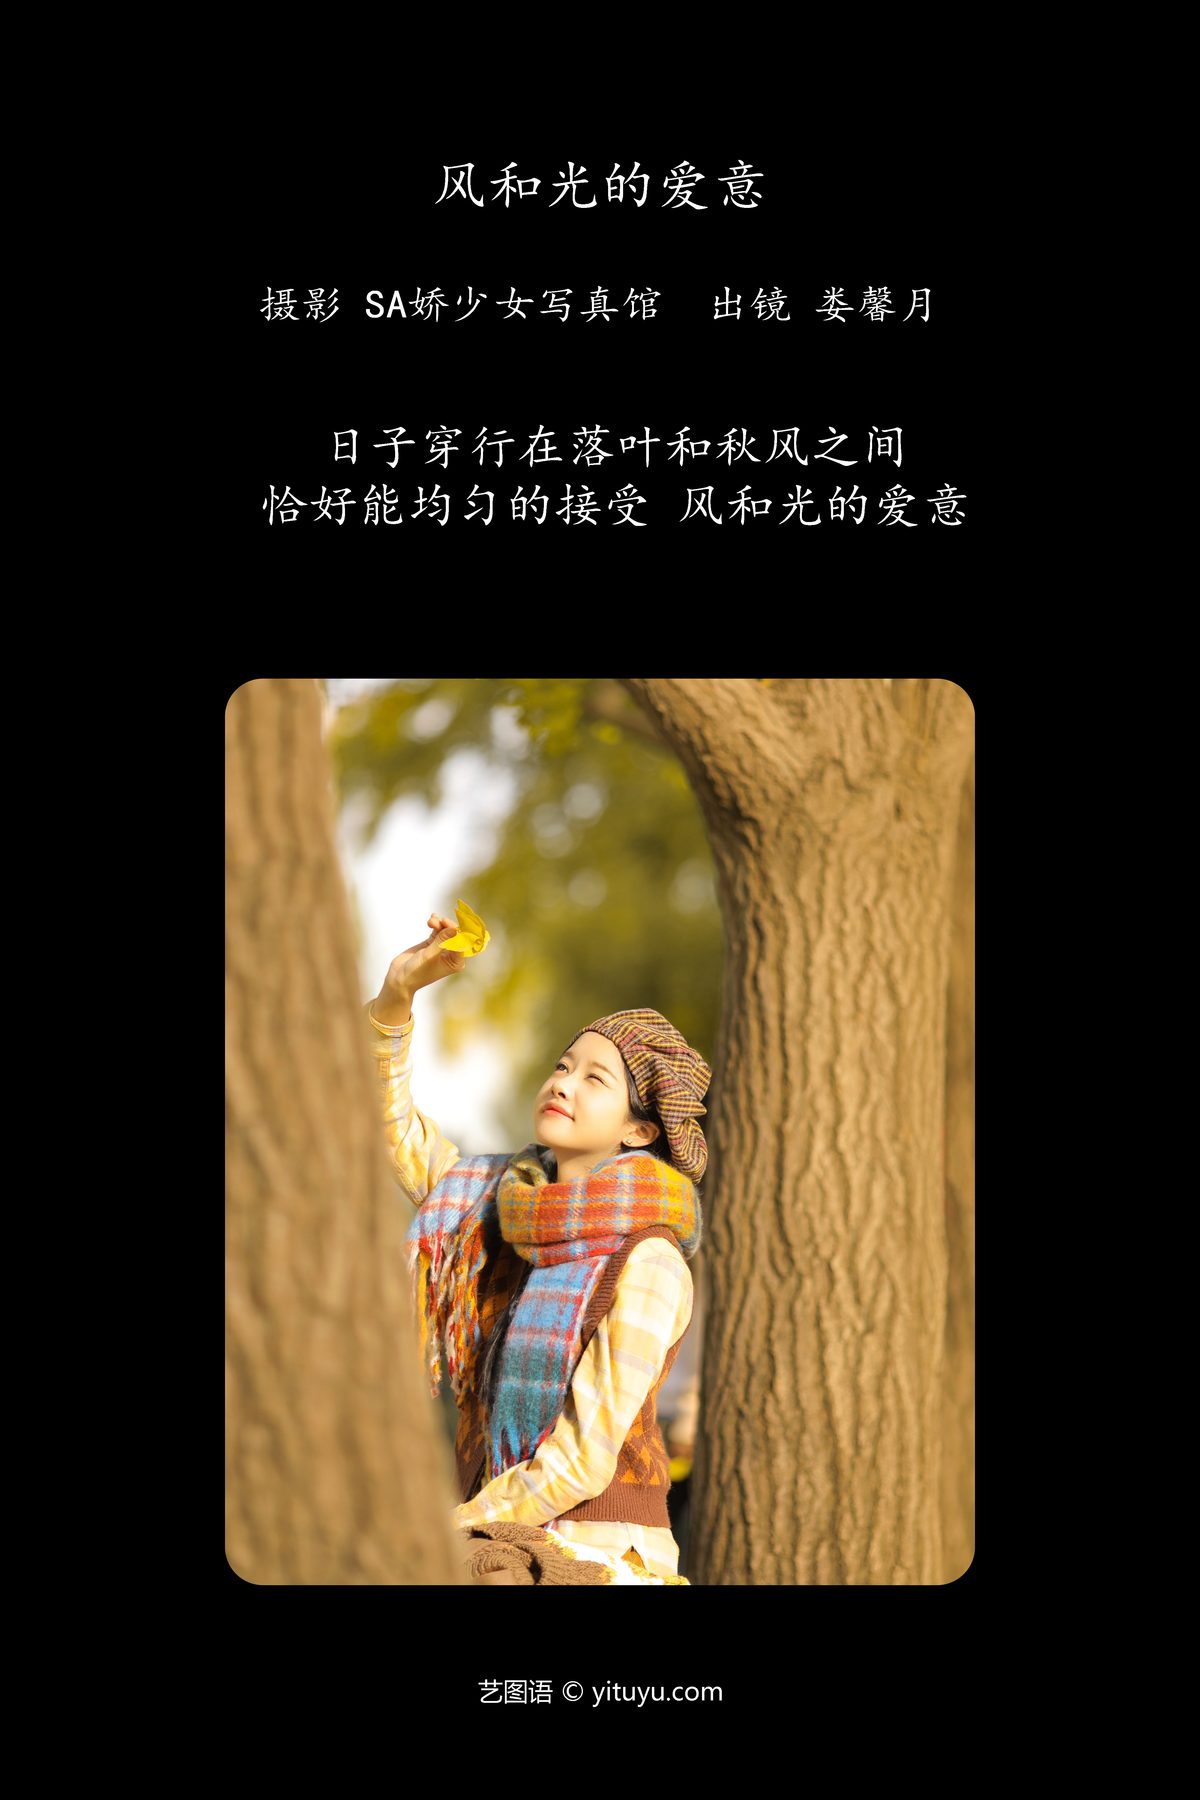 YiTuYu艺图语 Vol 5913 Lou Xin Yue Moon 0002 3716291643.jpg